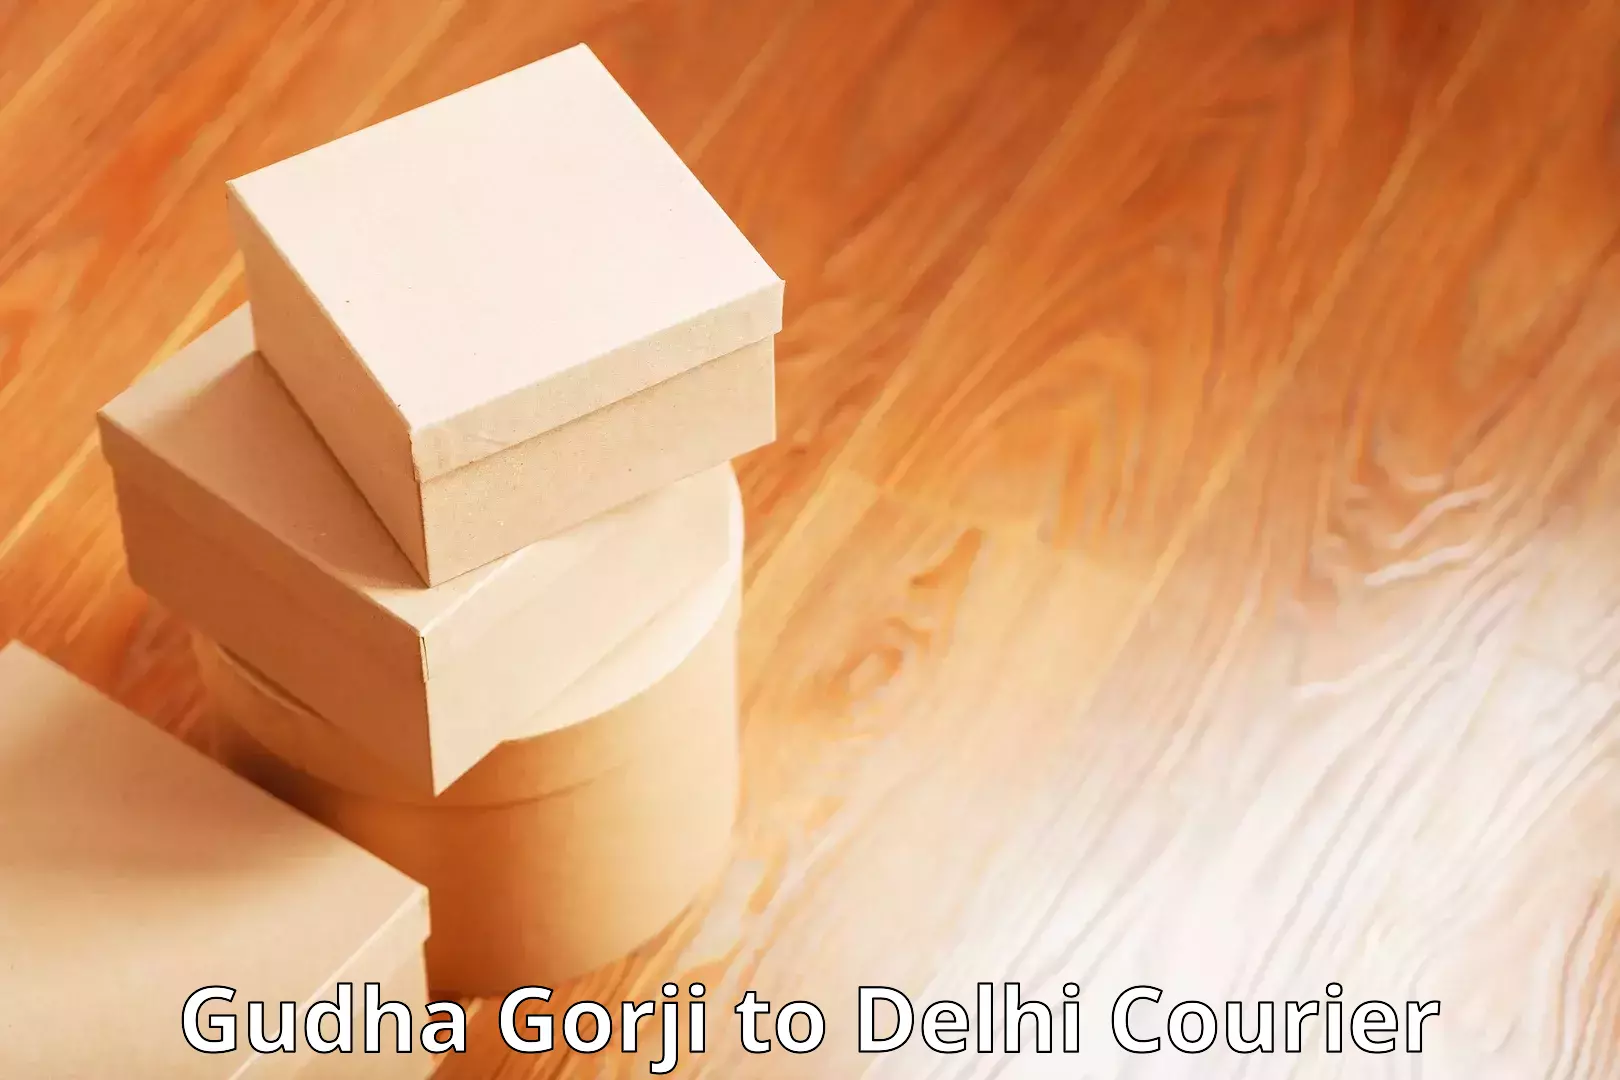 Customer-centric shipping in Gudha Gorji to Subhash Nagar